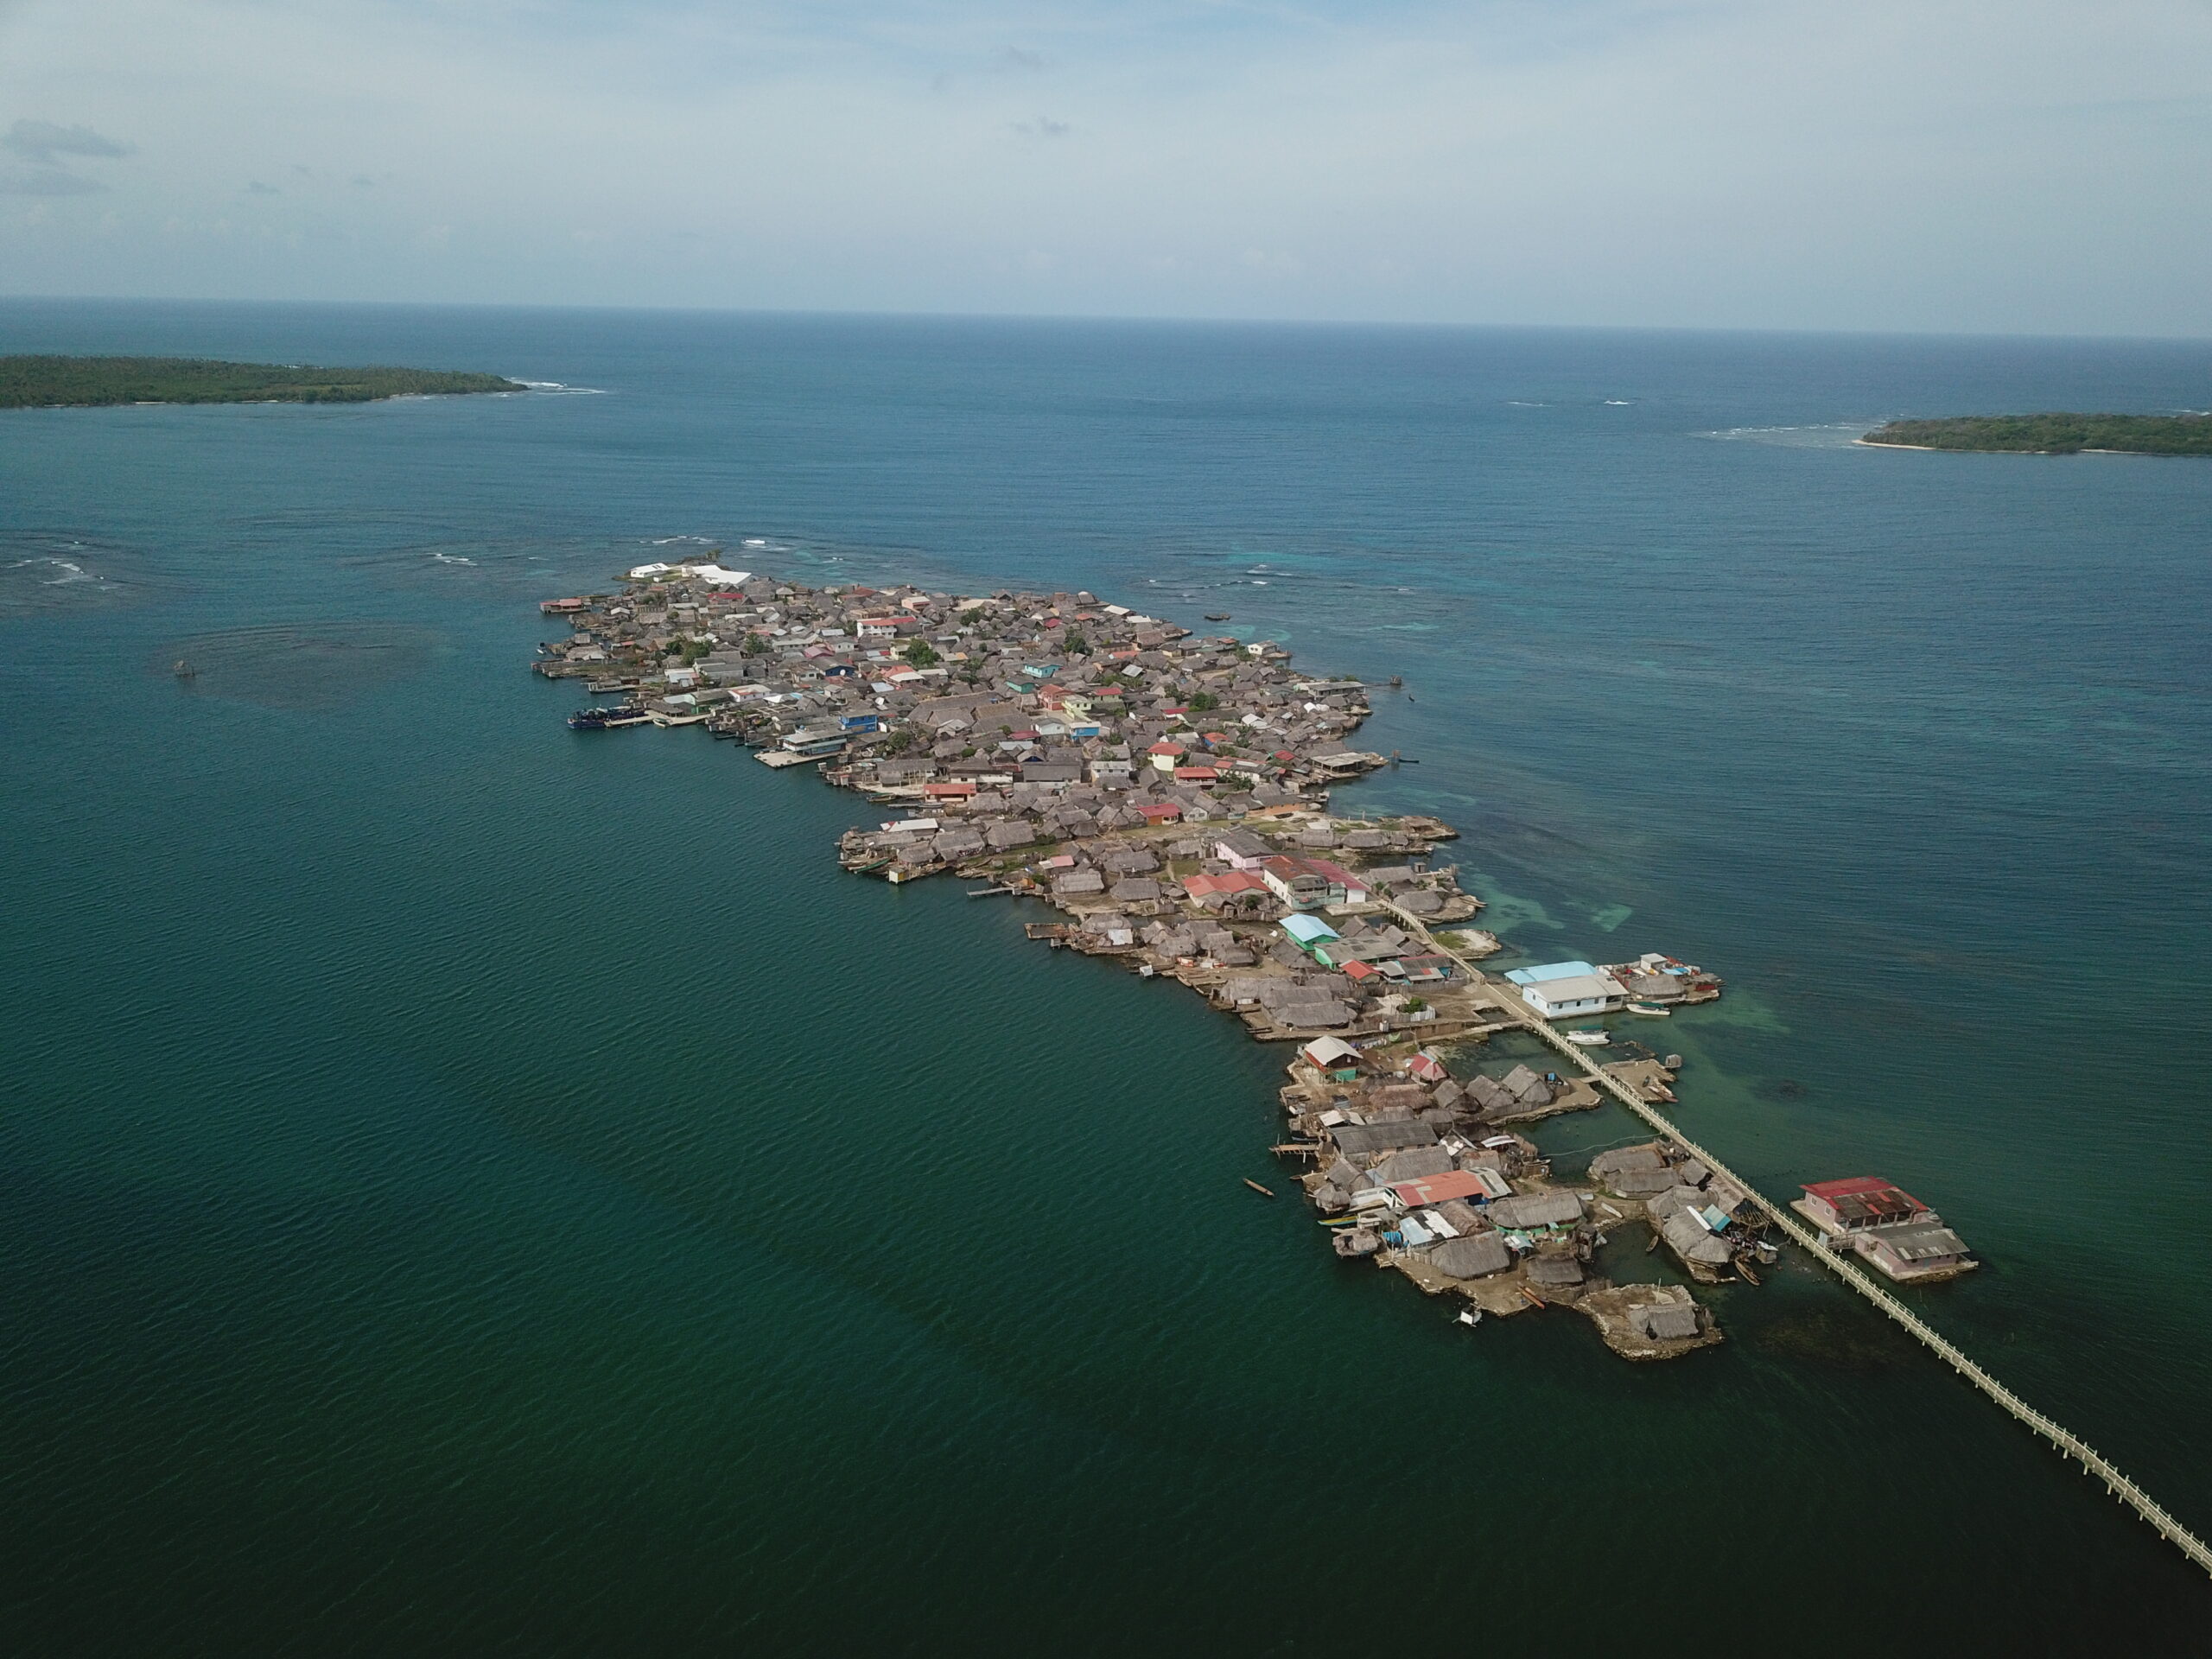 Foto aérea de uma das ilhas que compõem o território do povo Guna do Panamá "Guna Yala". 
Ganhadores do Concurso de Fotografia “Soluções Inovadoras dos Povos Indígenas”
Nome da foto: A esperança de continuar a viver. 
Autor: Alcibiades Rodríguez